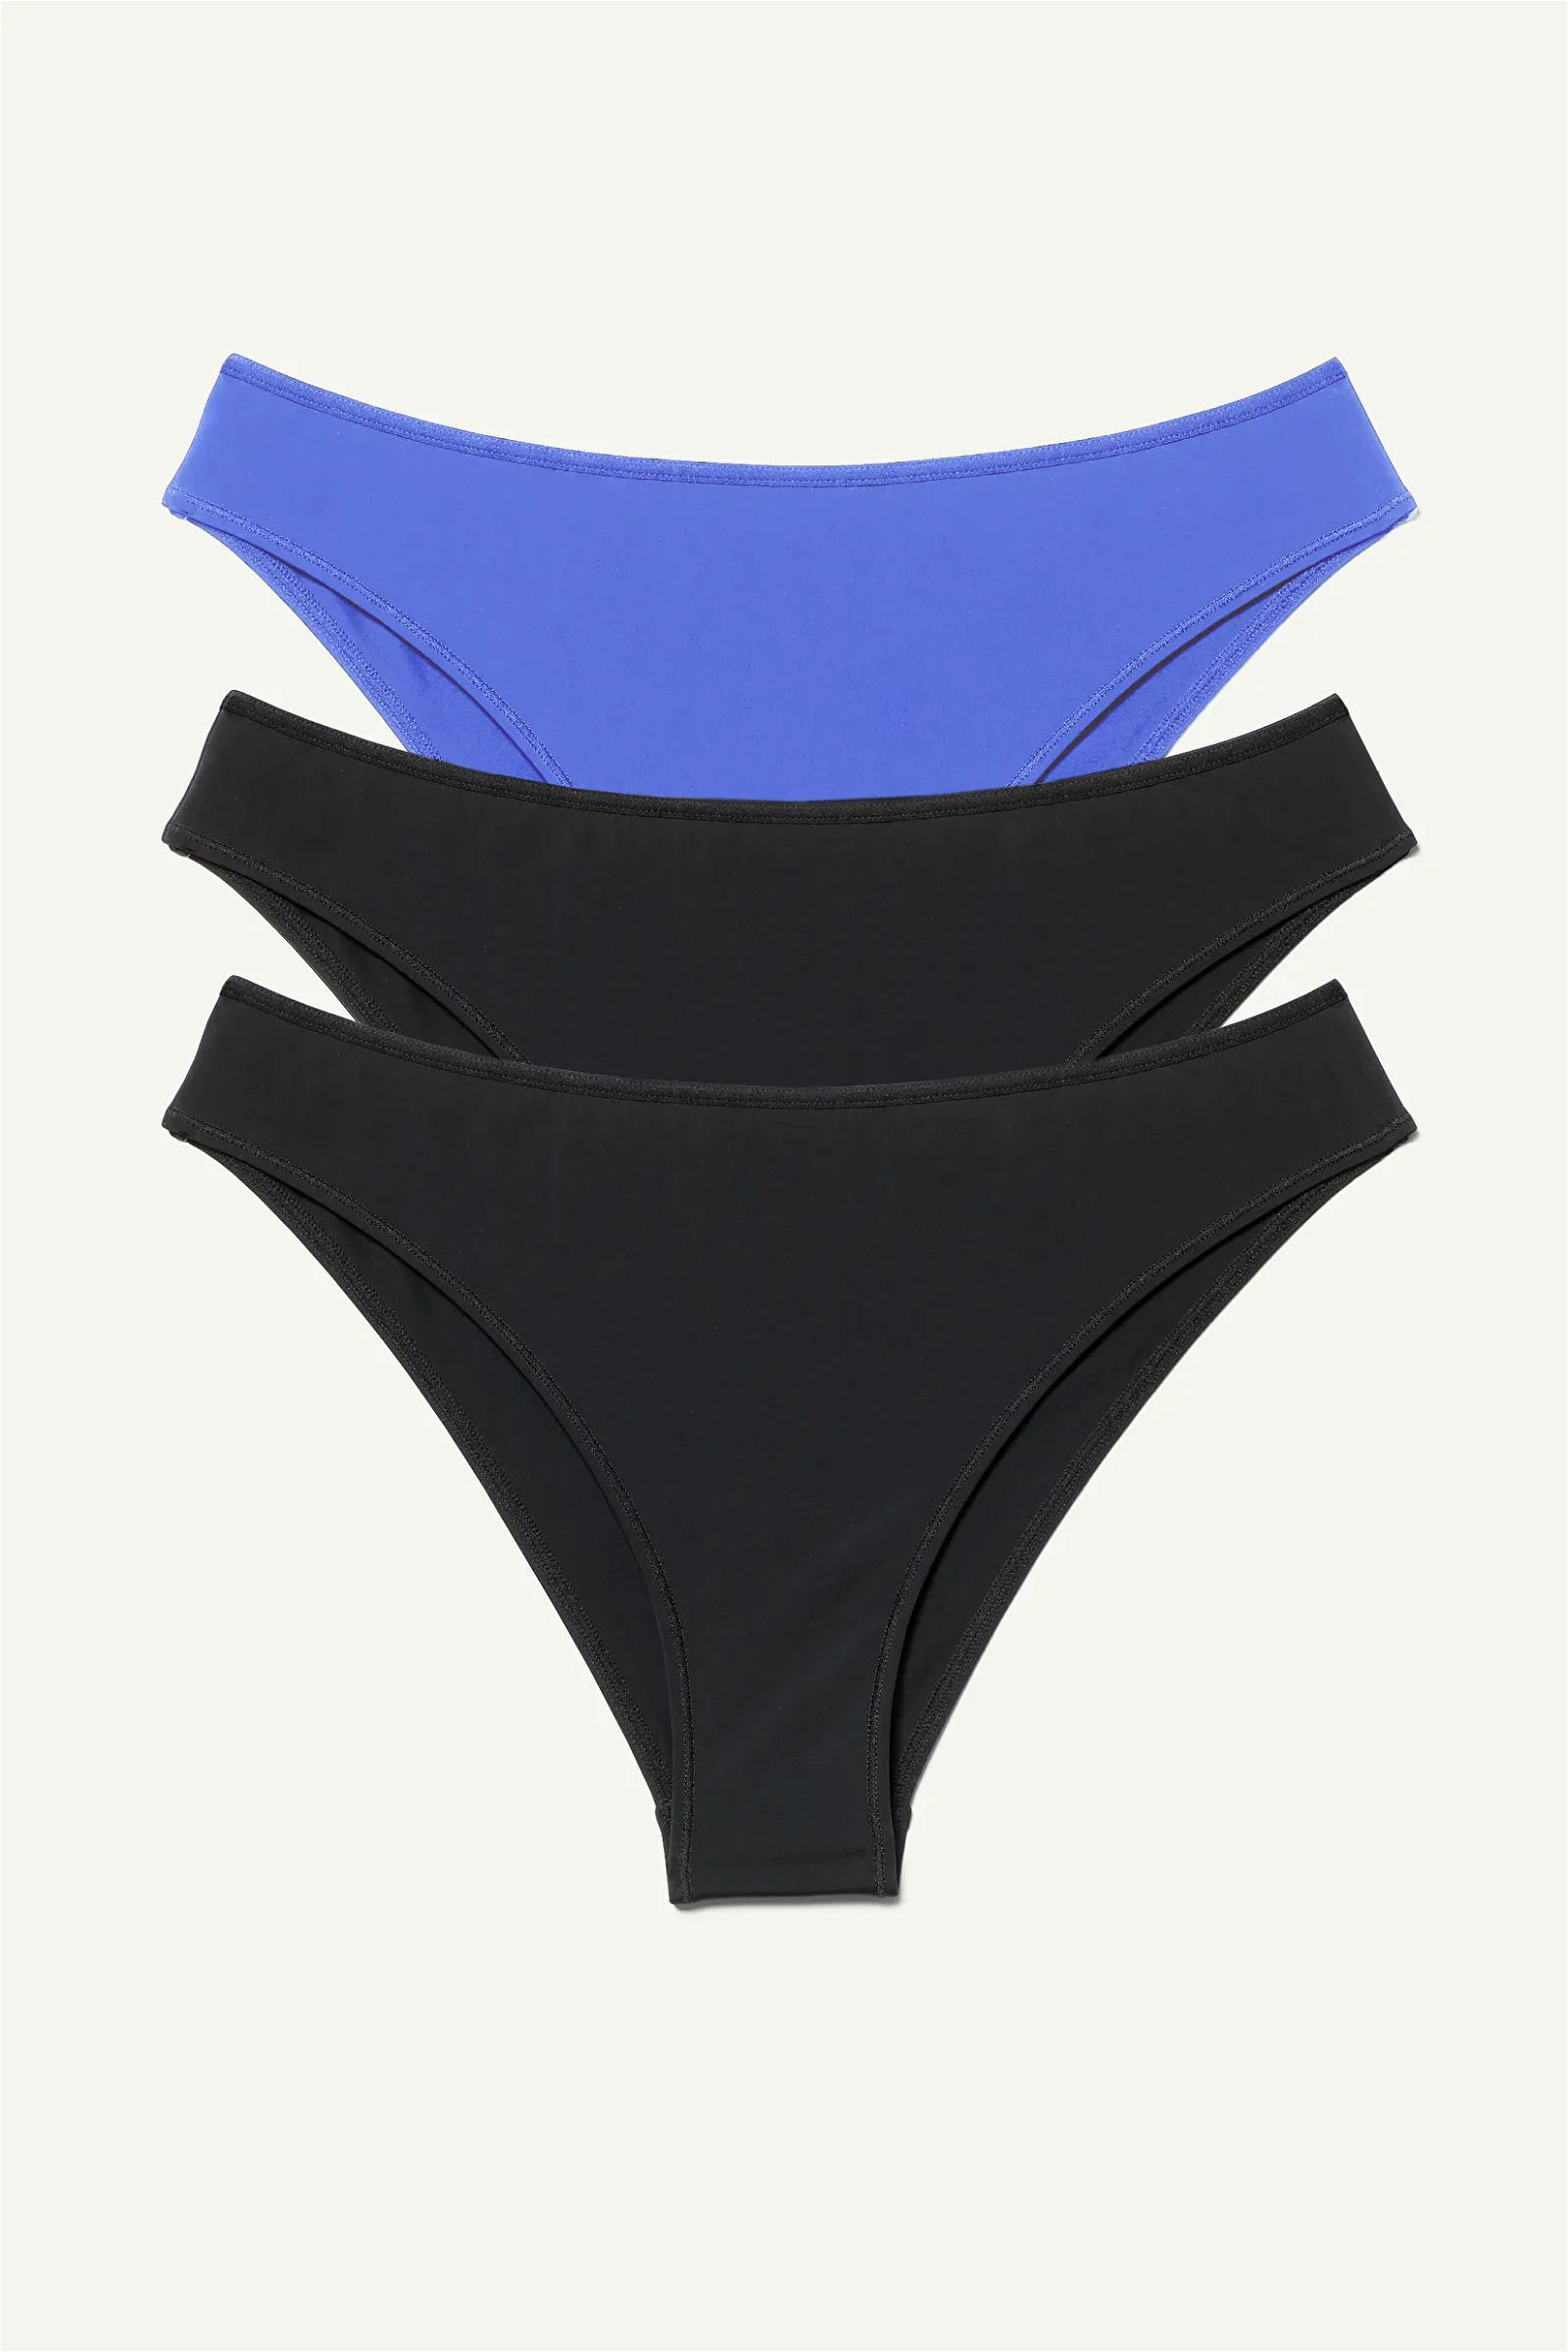 Underwear  Weekday Women Bonnie Brazilian Briefs 3-pack